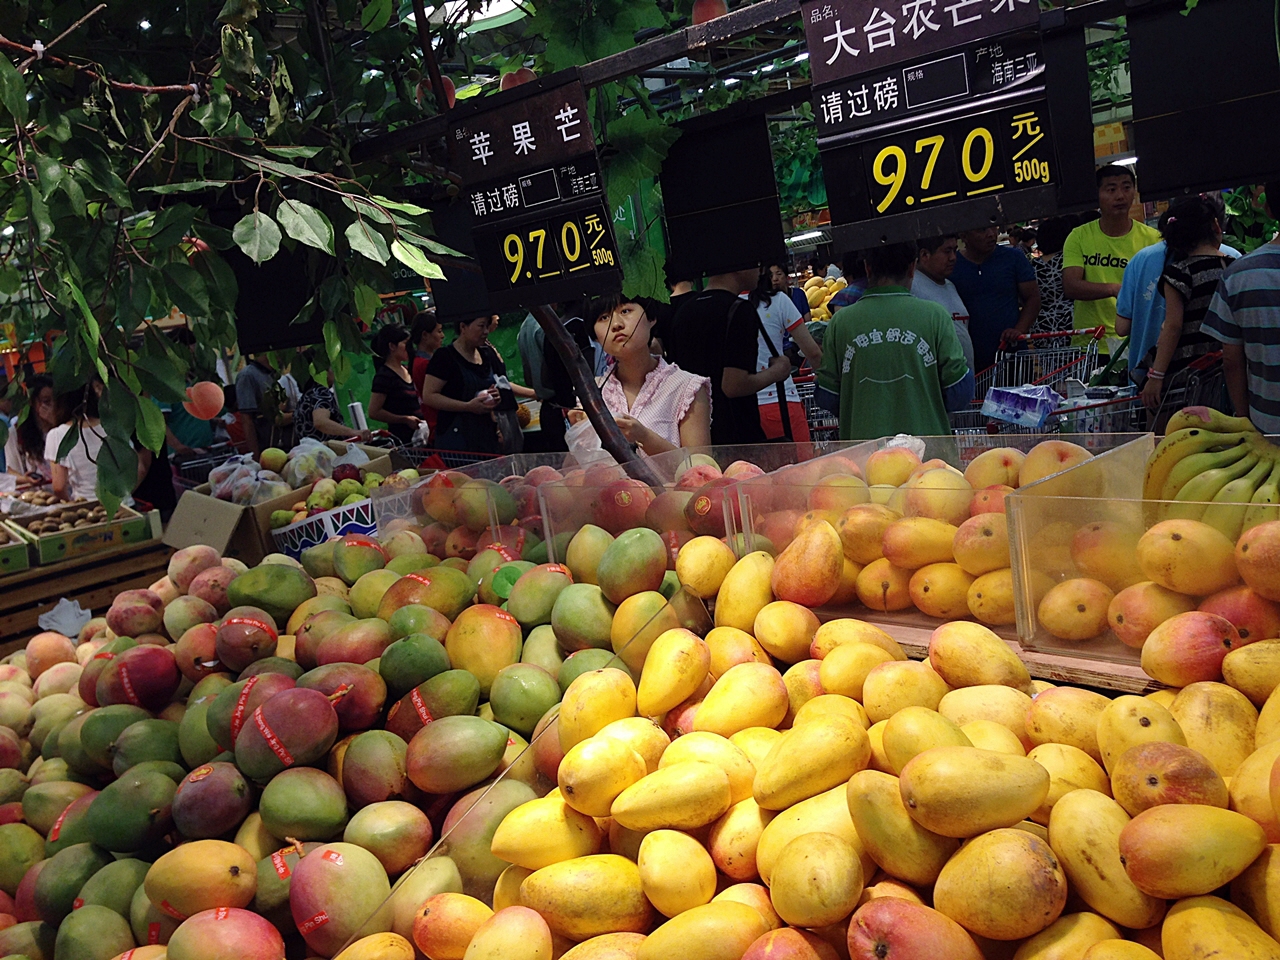 중국 마트에서의 망고, 중국은 과일시세가 저렴하다.